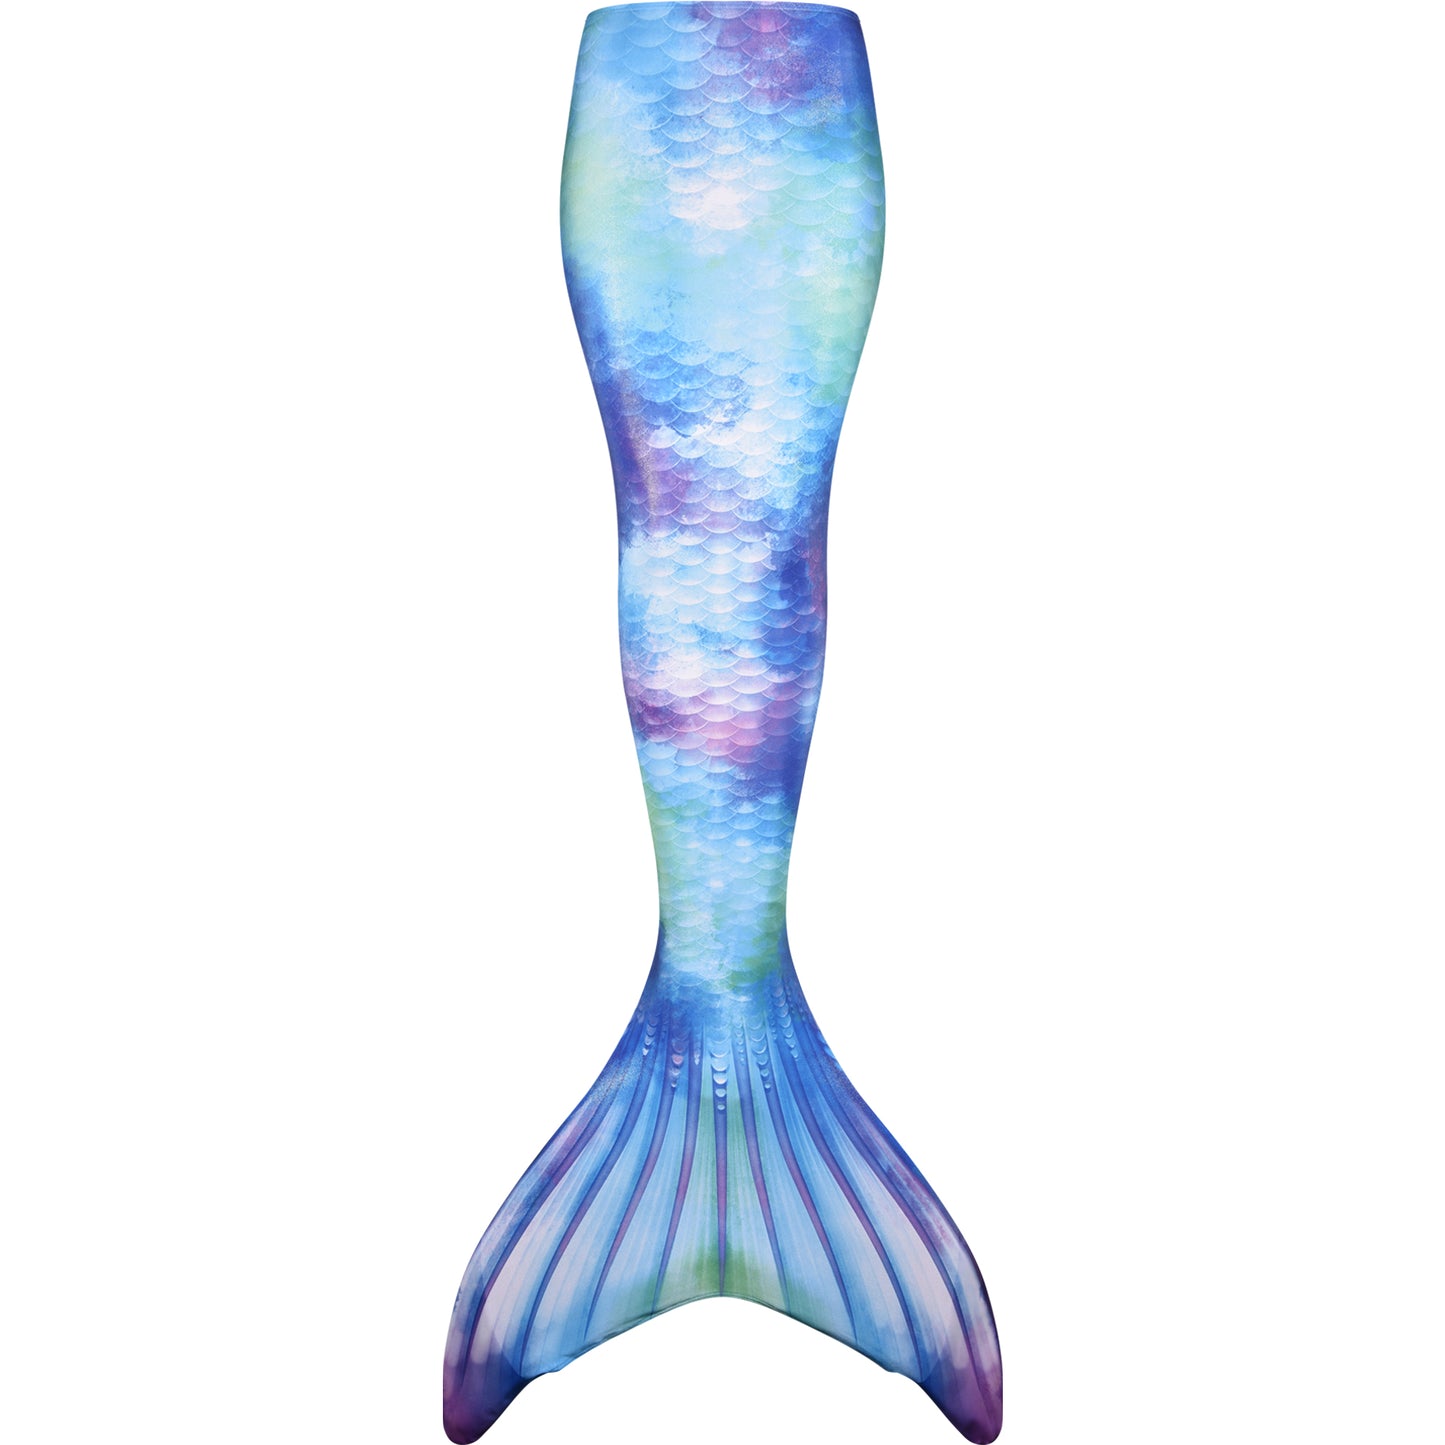 Watercolor Waves Mermaid Tail